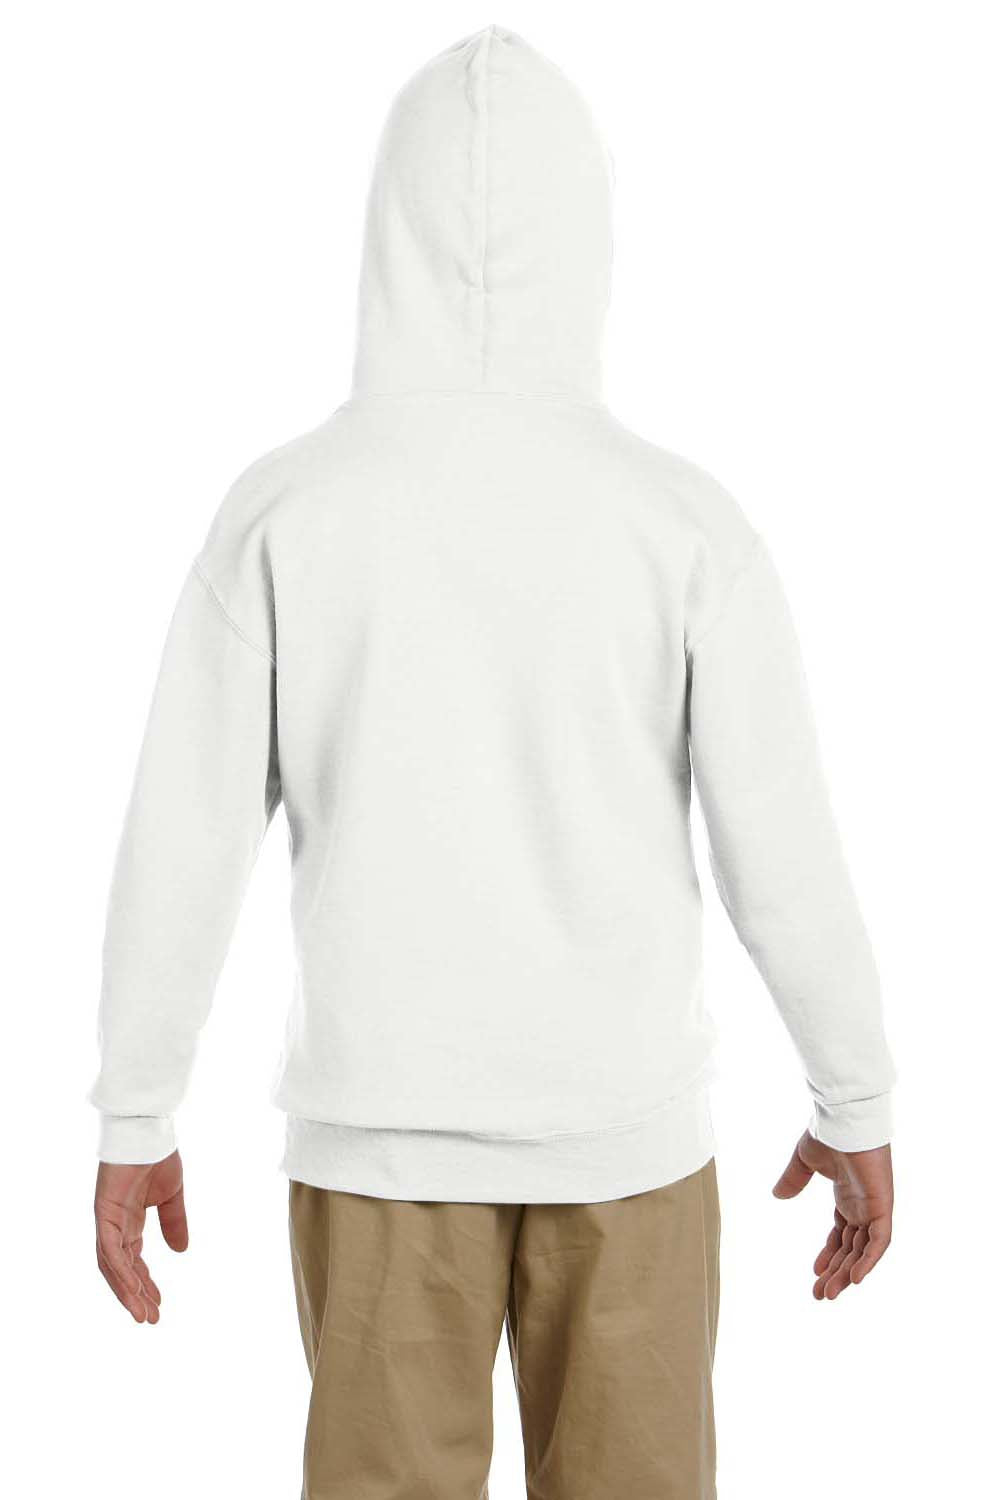 Jerzees 996Y Youth NuBlend Fleece Hooded Sweatshirt Hoodie White Back